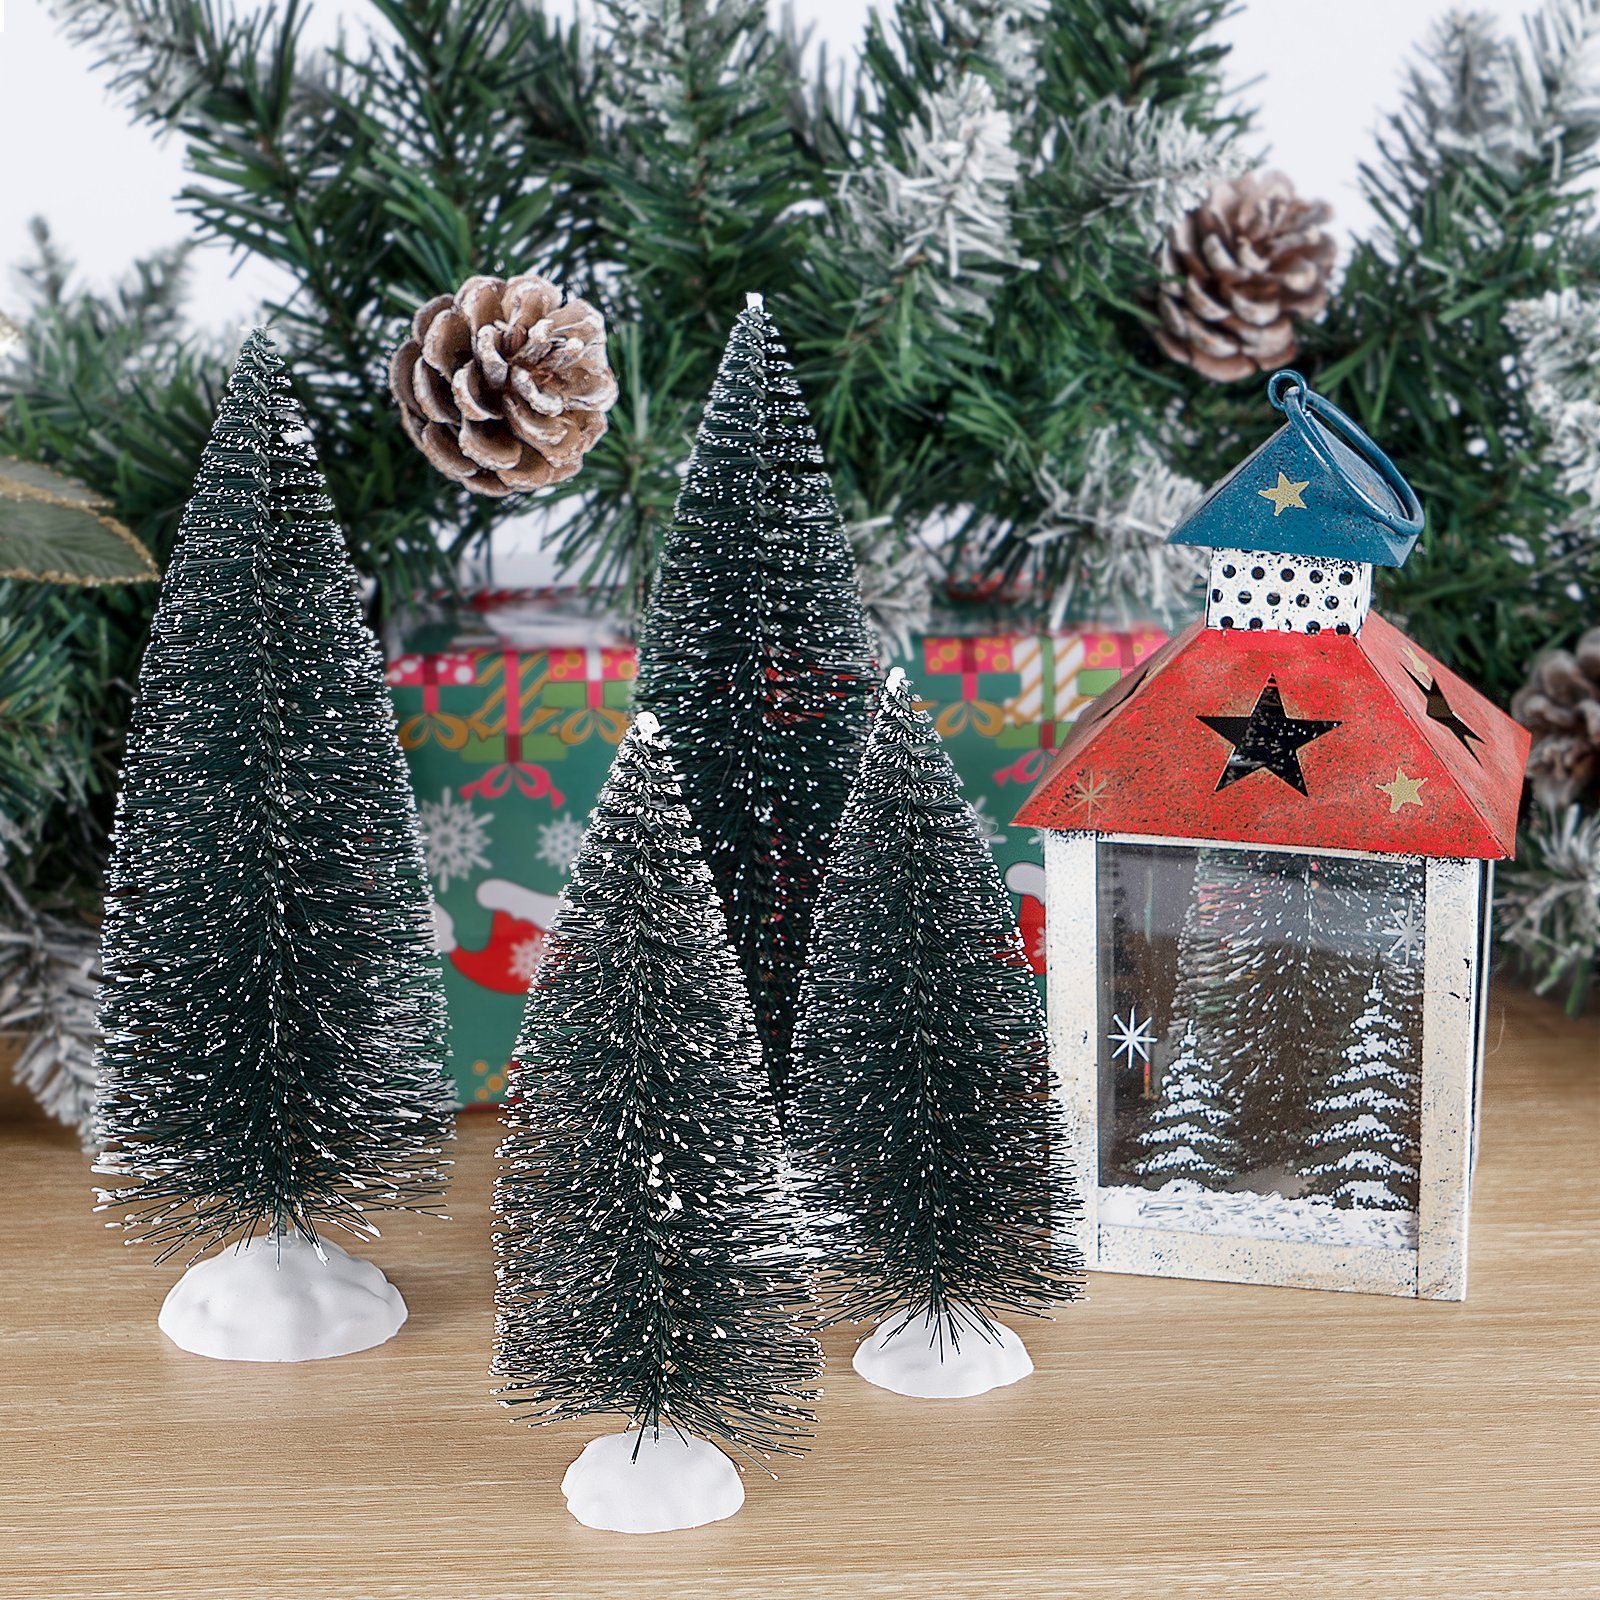 Schnee Künstlicher Christmas Stück Mini Weihnachtsbaum Baum 10/15 Tannenbaum Weihnachtsbaum Weihnachtsbaum Weihnachtsdeko Homewit Tree, klein Mini klein